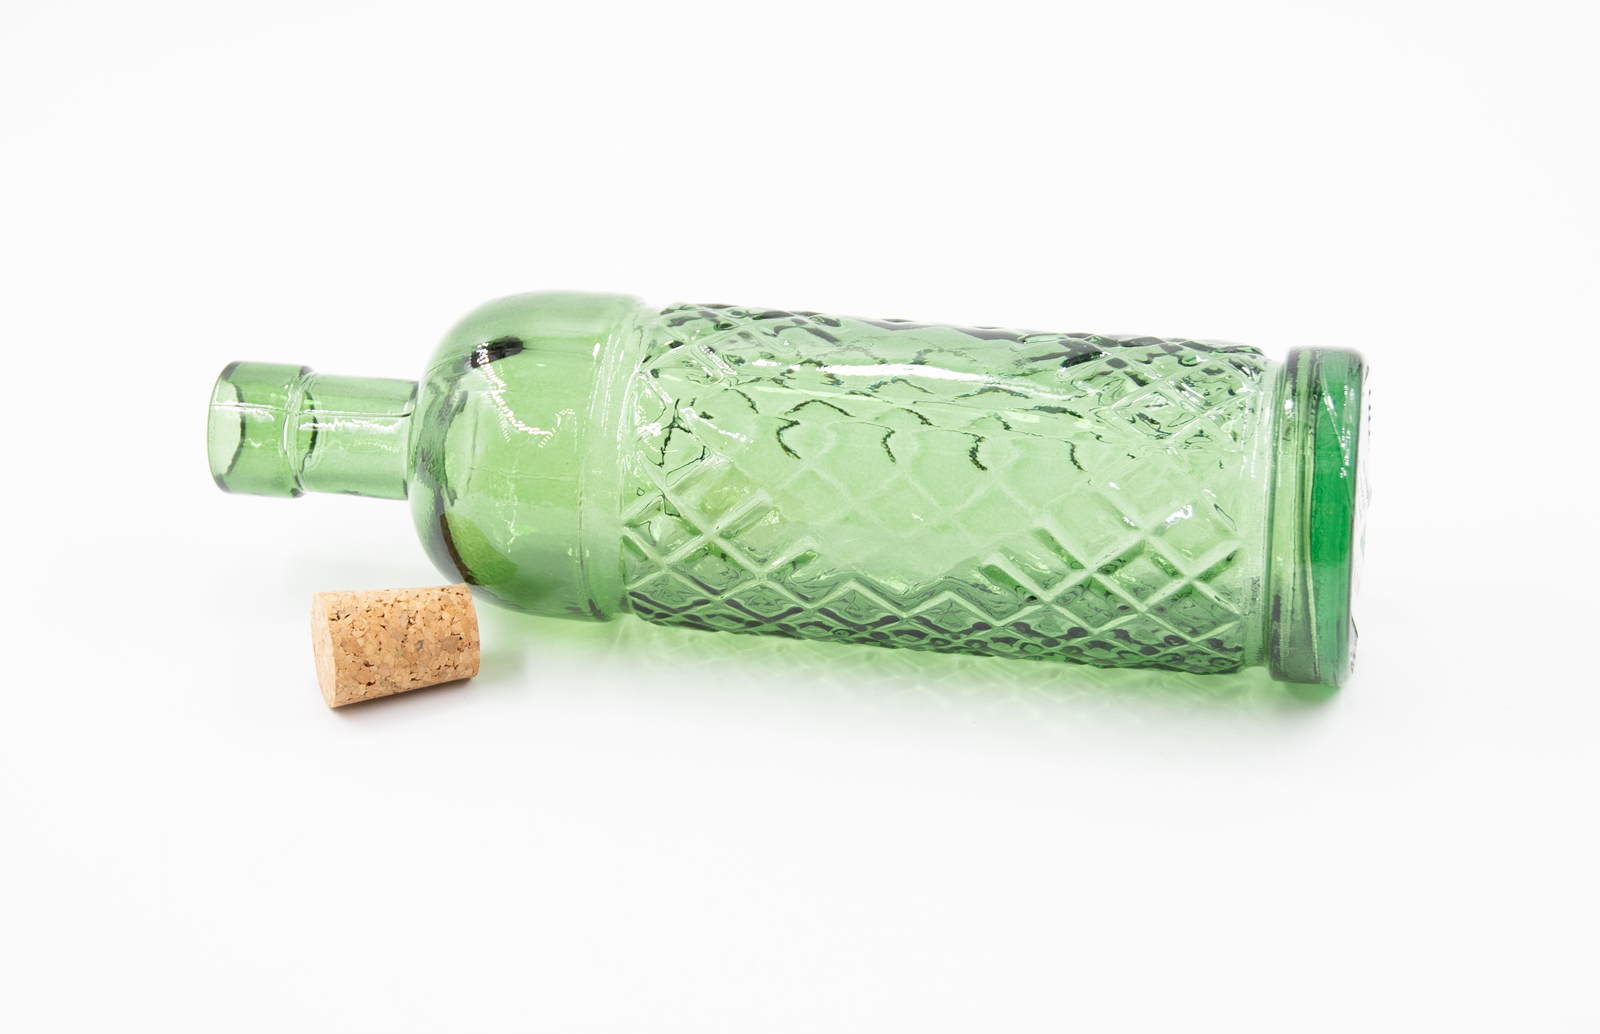 Glasflasche mit Korkverschluß 450ml Essig / Öl Landhausstil